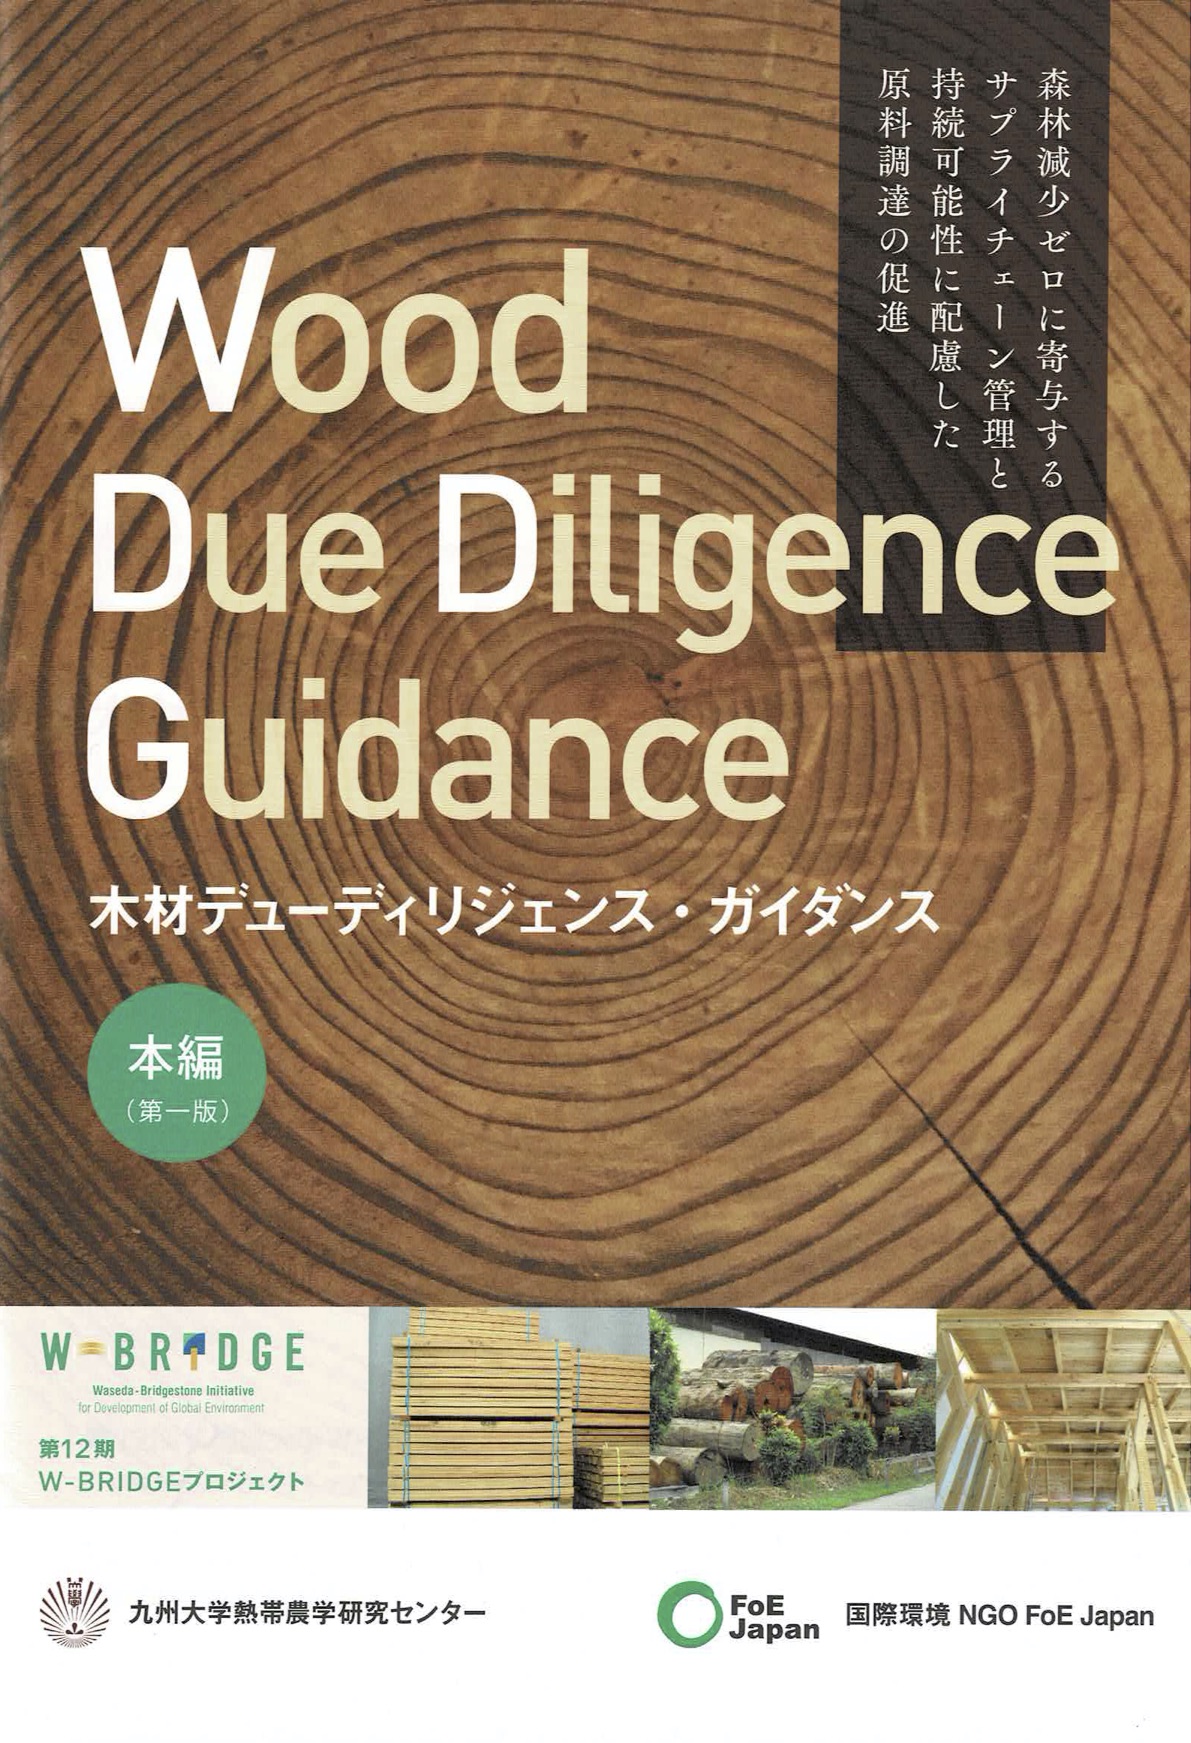 違法伐採を防止するために！『木材のデューディリジェンス・ガイダンス 本編・実践編』編集のお手伝いをしました